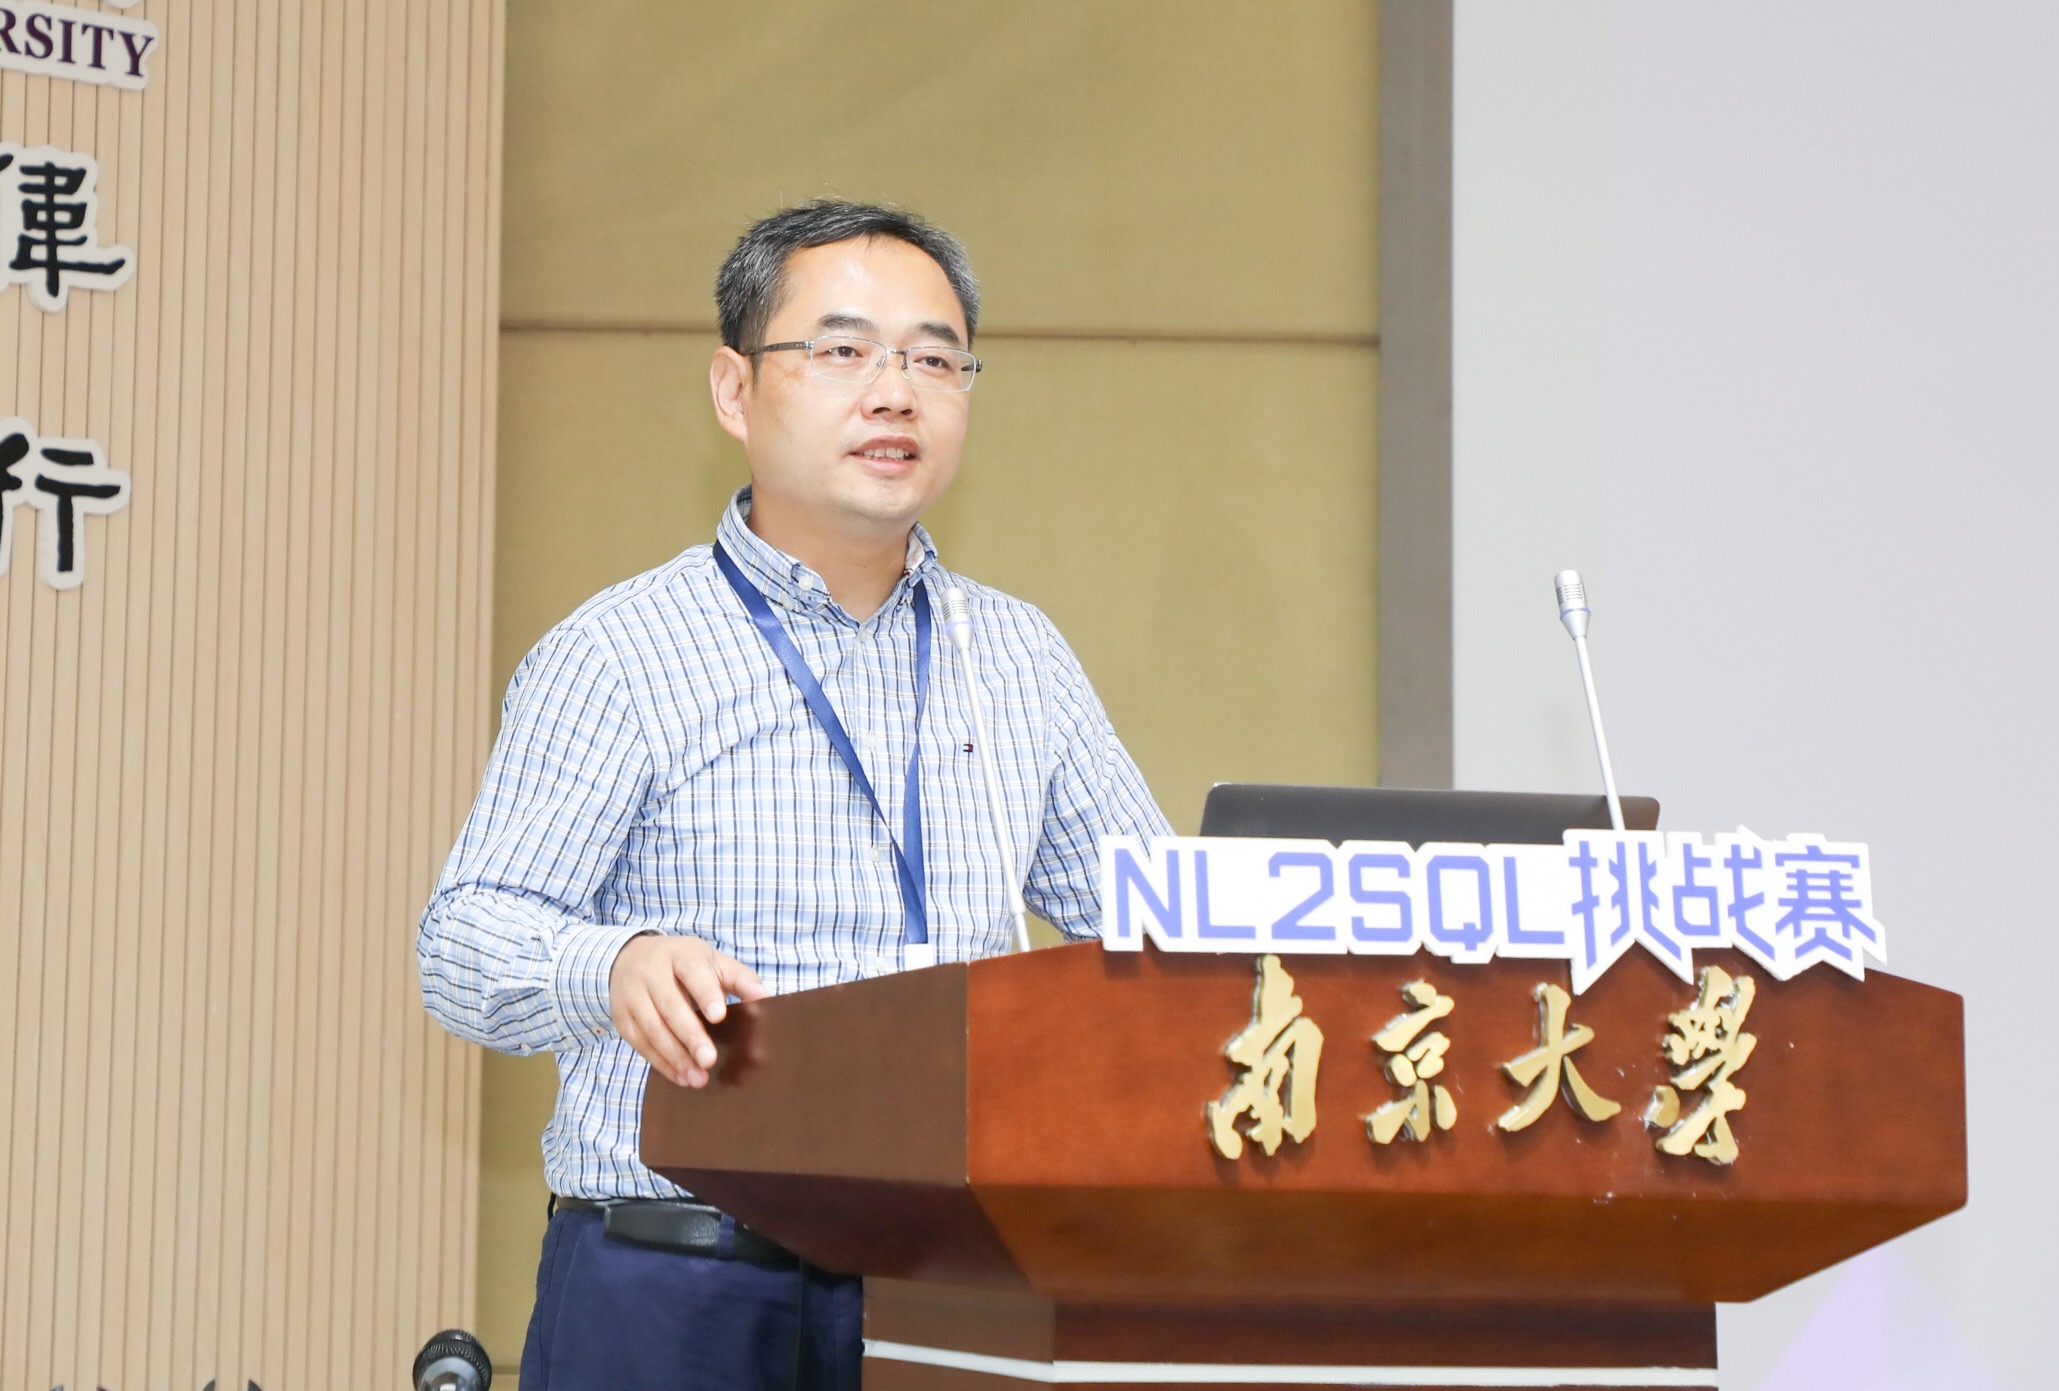 首届中文NL2SQL挑战赛完美收官，产学研携手推动智能交互的发展